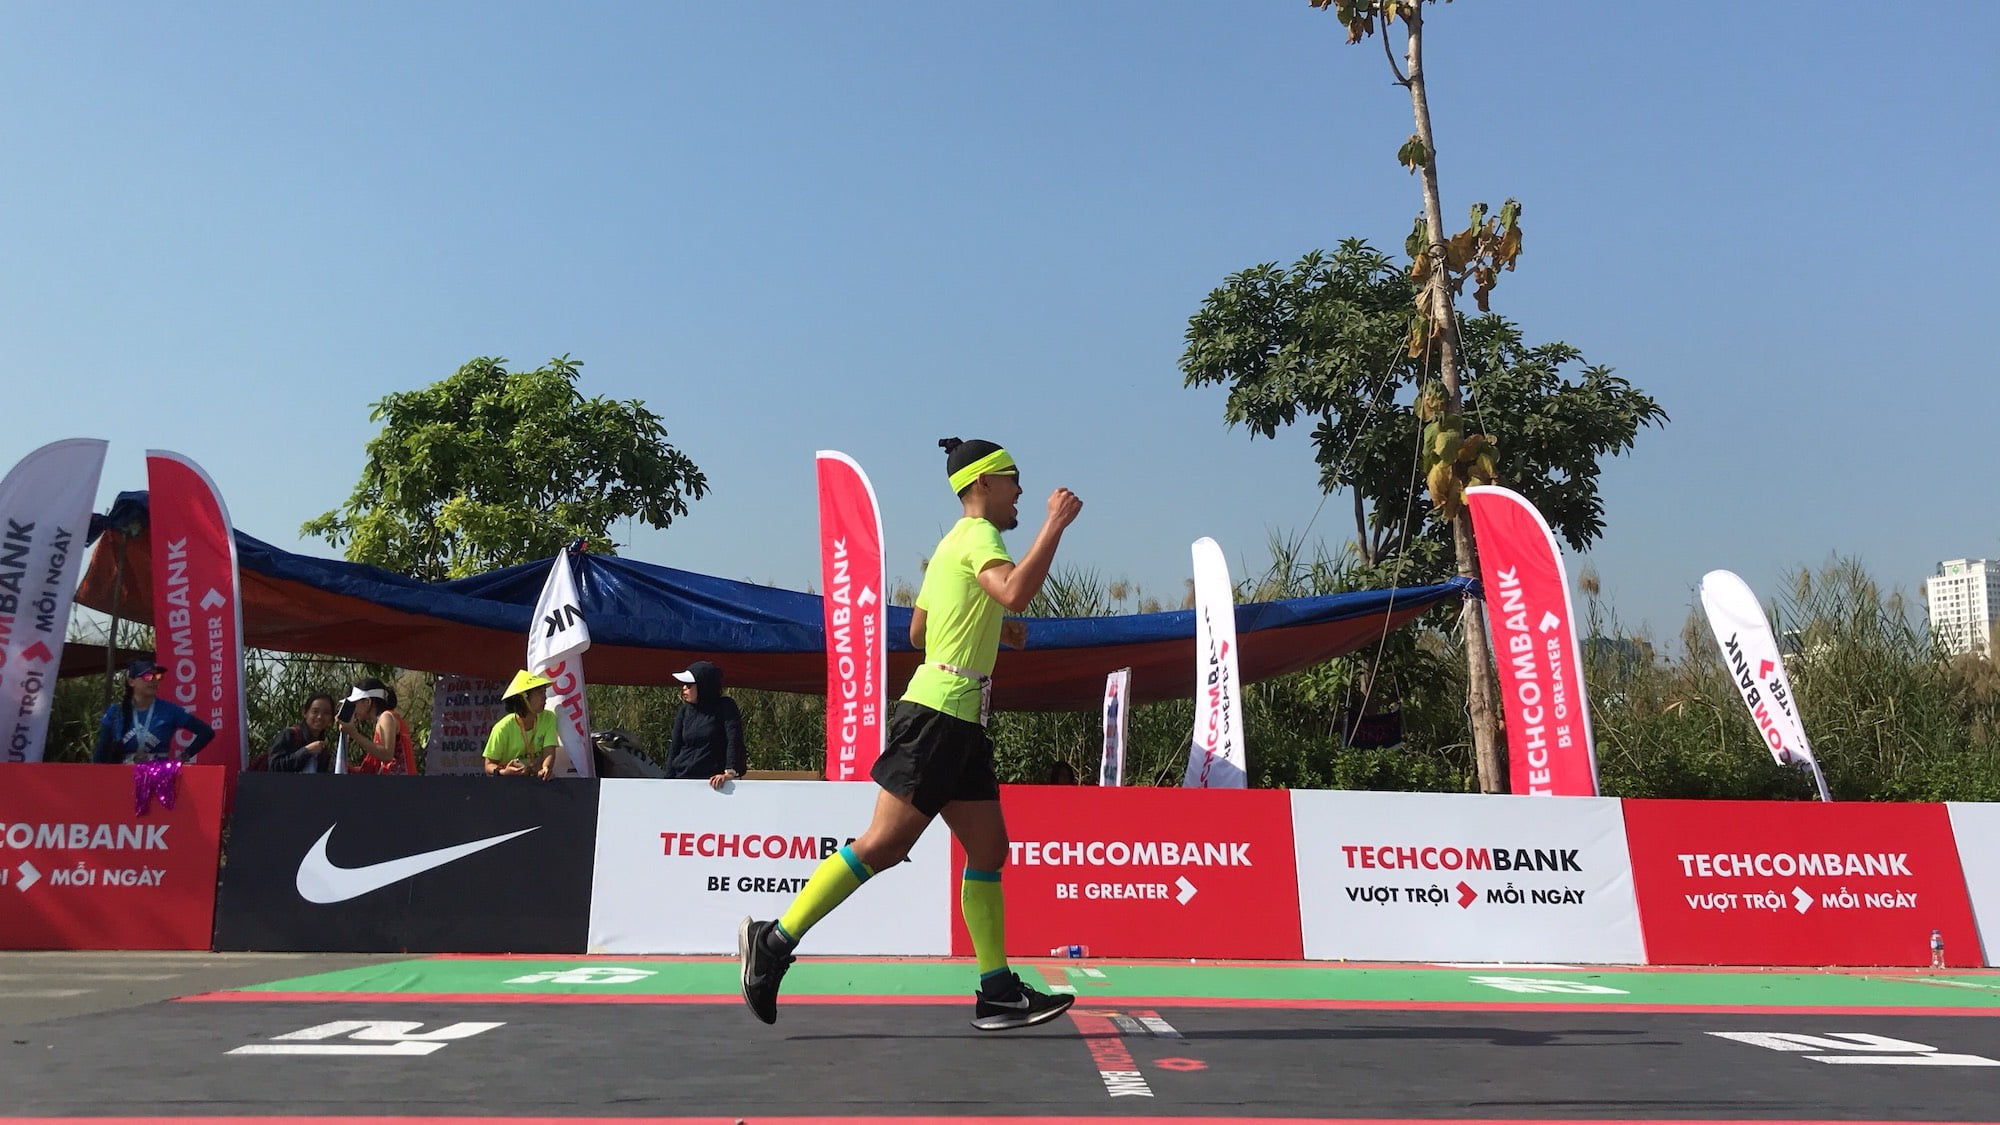 Kí sự HCMC International Marathon 2019 - Lần 2 chinh phục Full Marathon trên đường nhựa - ve dich ki su hcmc marathon 2019